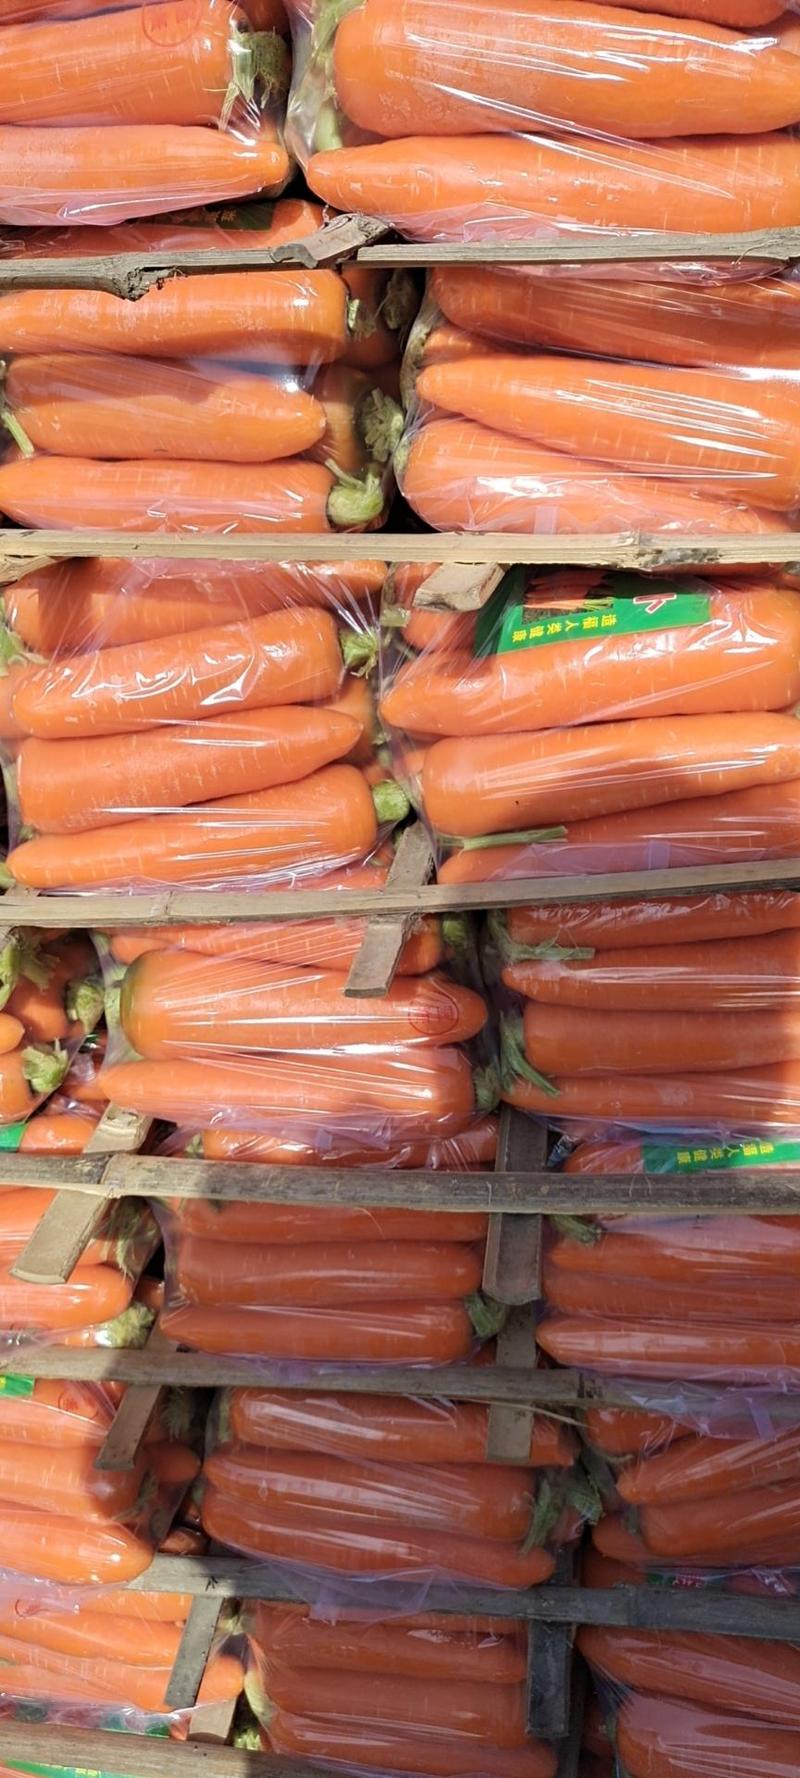 『优质胡萝卜』大量上市全国供应品质好欢迎洽谈合作